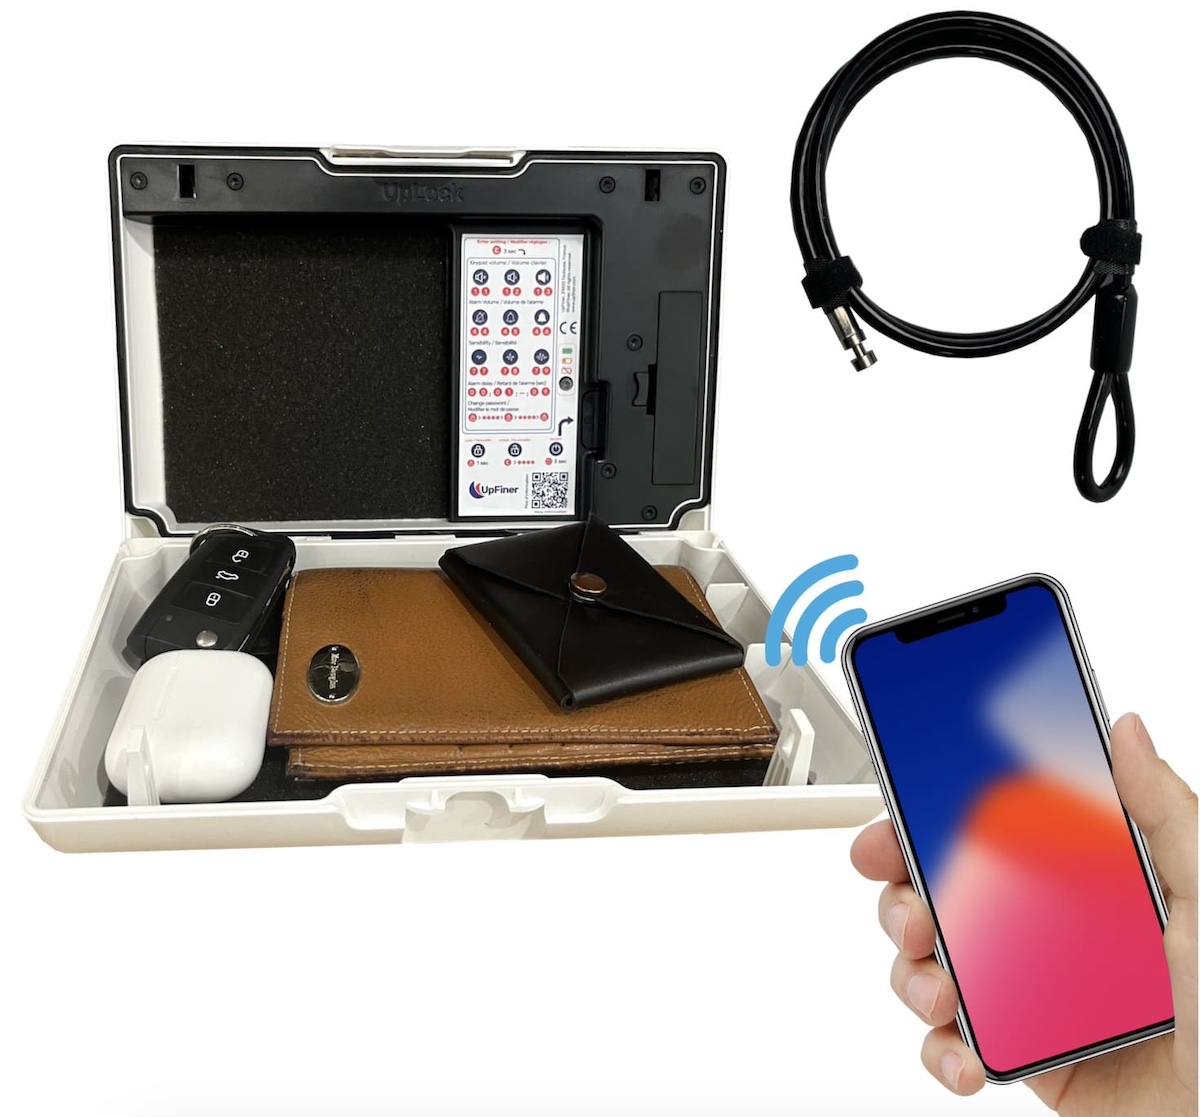 Mobil değerli eşyalar için akıllı taşınabilir kasa UpLock mini kasa